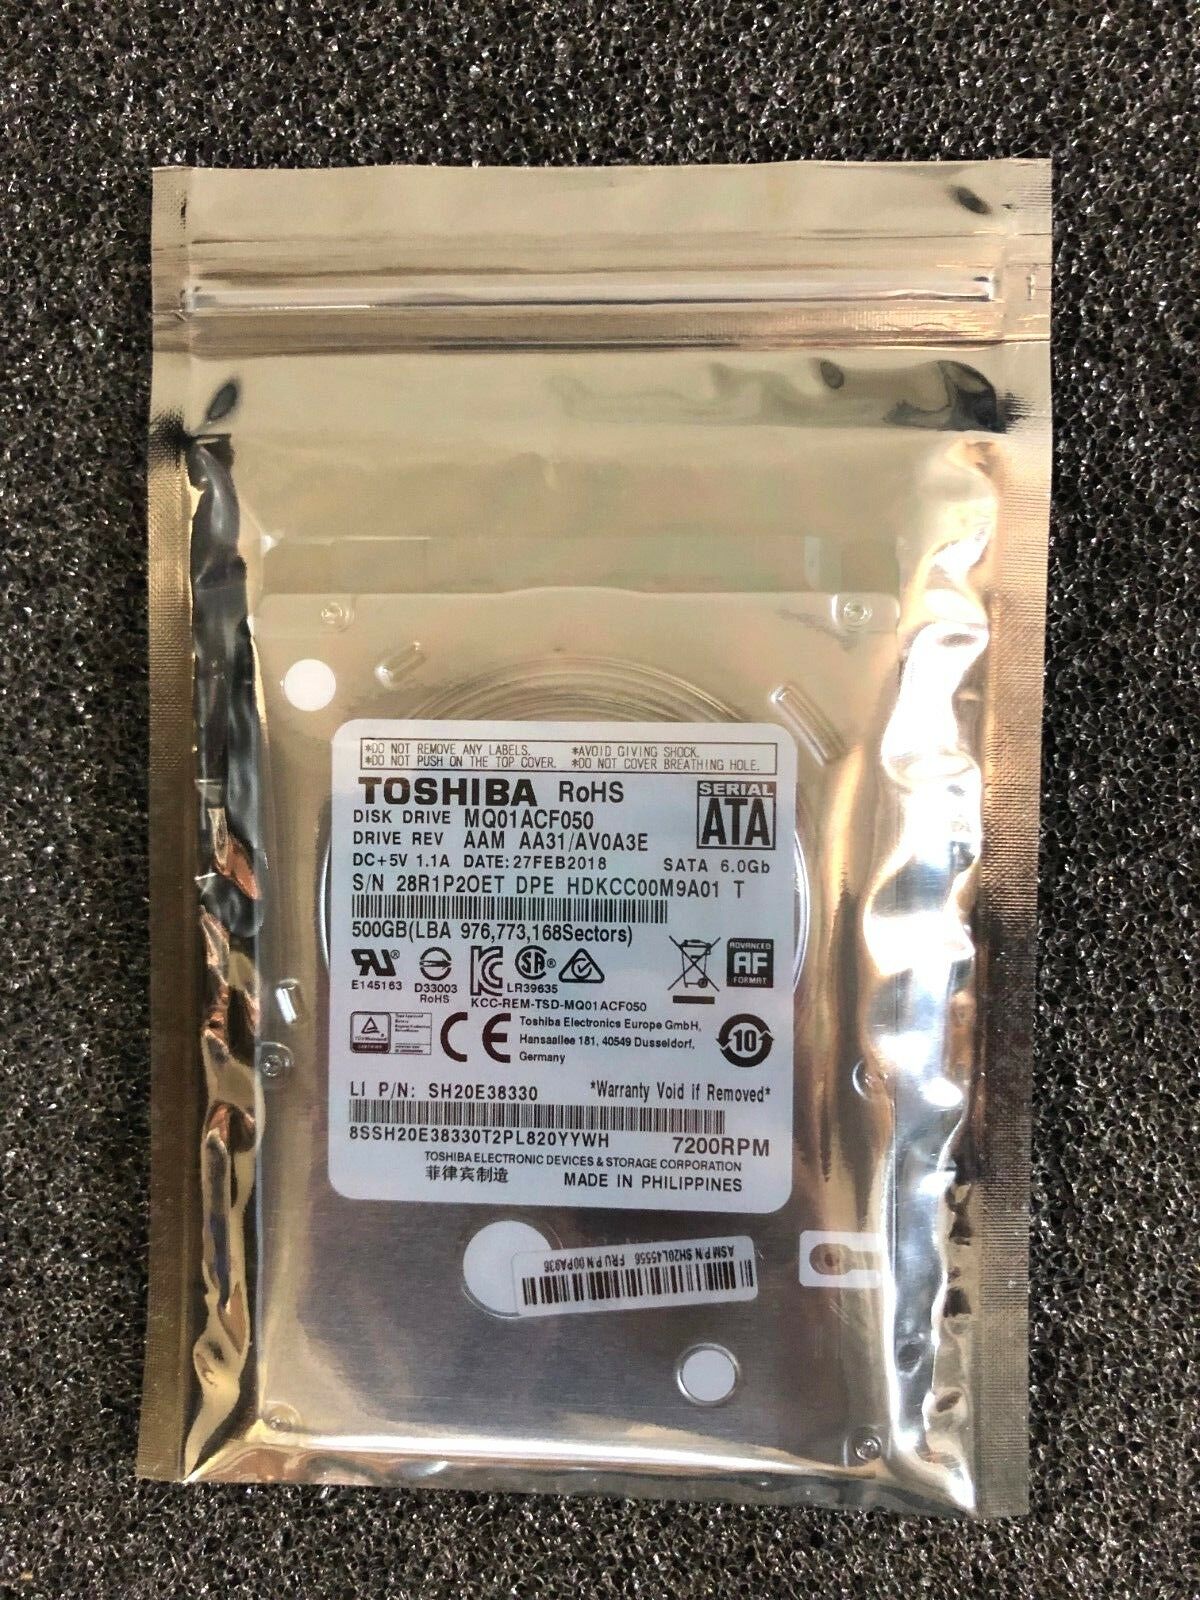 Toshiba 2.5" Laptop Internal Hard Drive 500gb Hdd 7200rpm Sata 7mm Mq01acf050